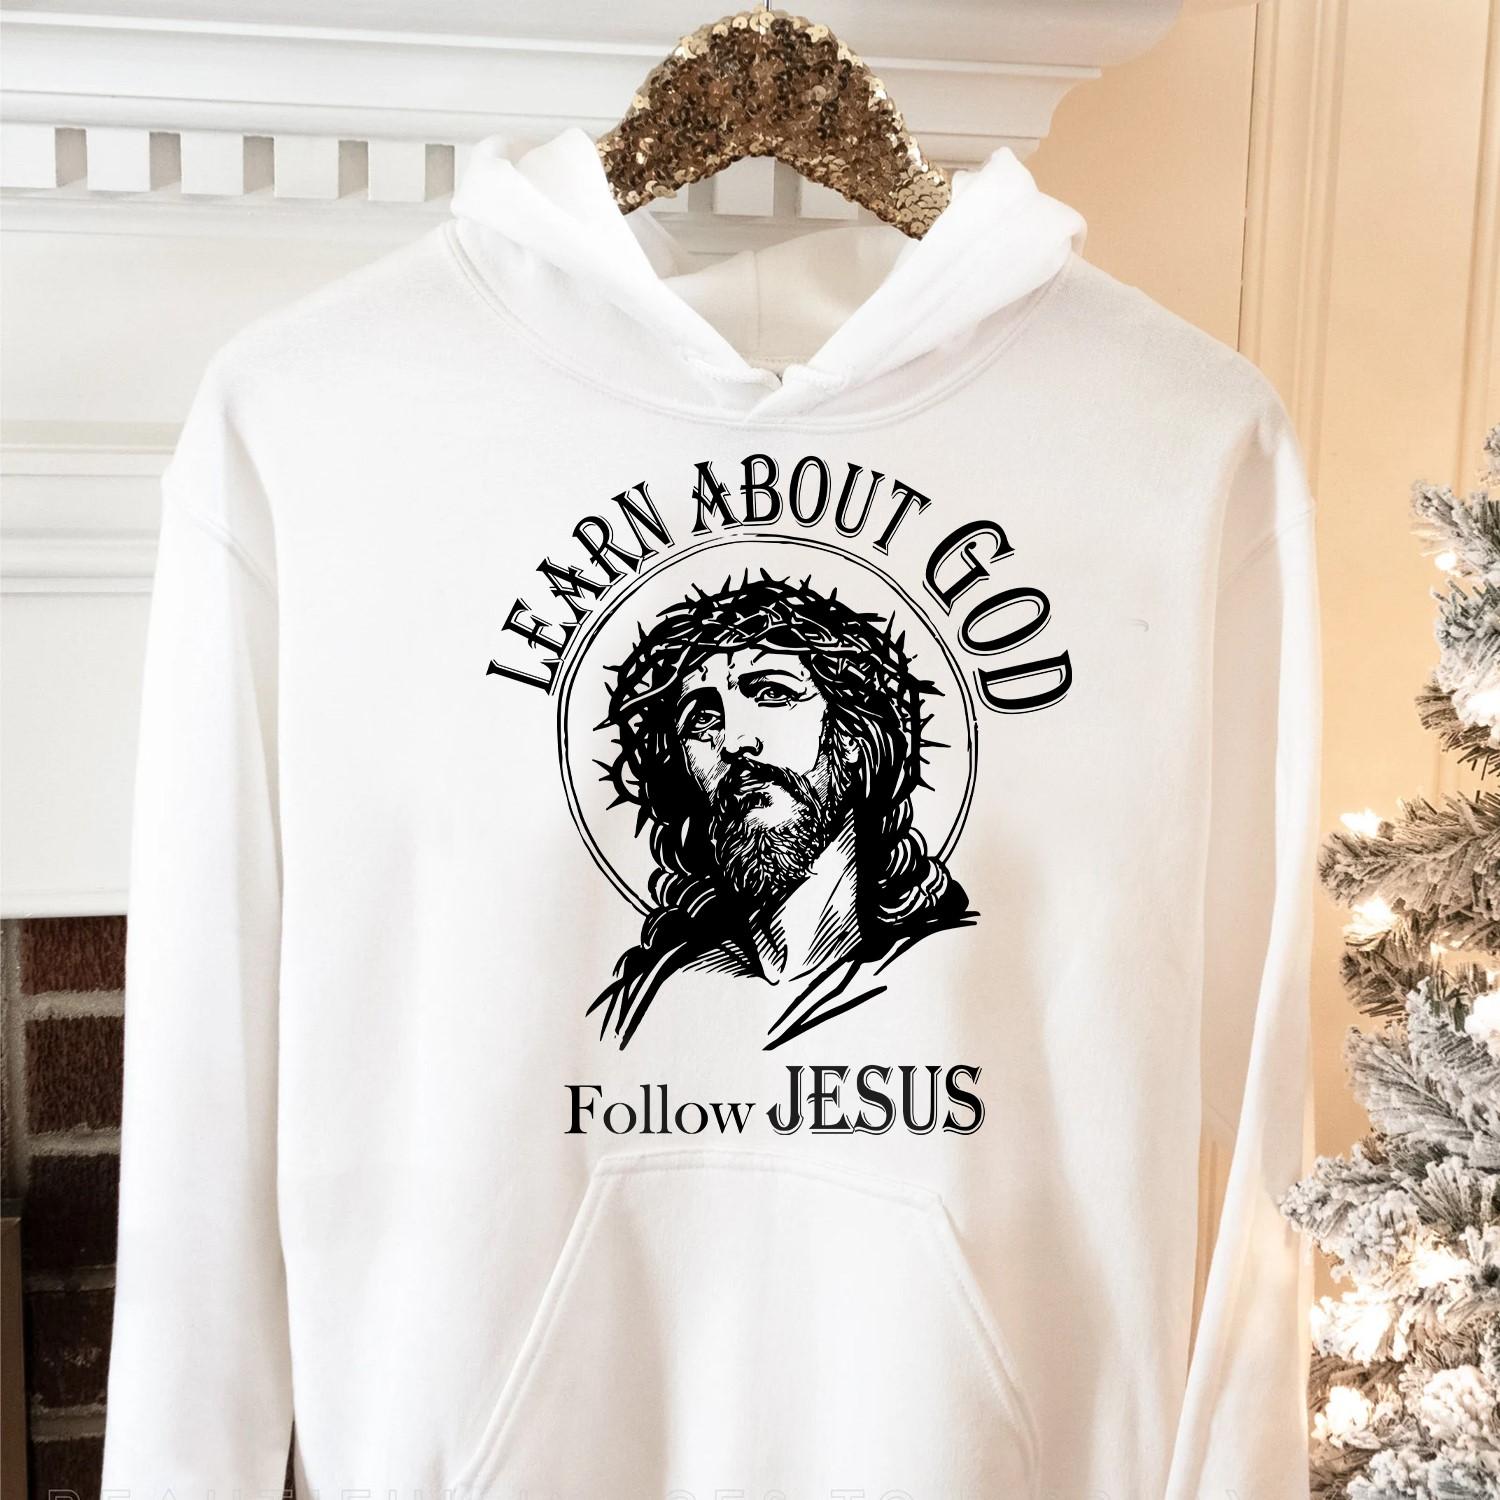 Learn about God, follow Jesus - Believe in Jesus, Jesus graphic T-shirt